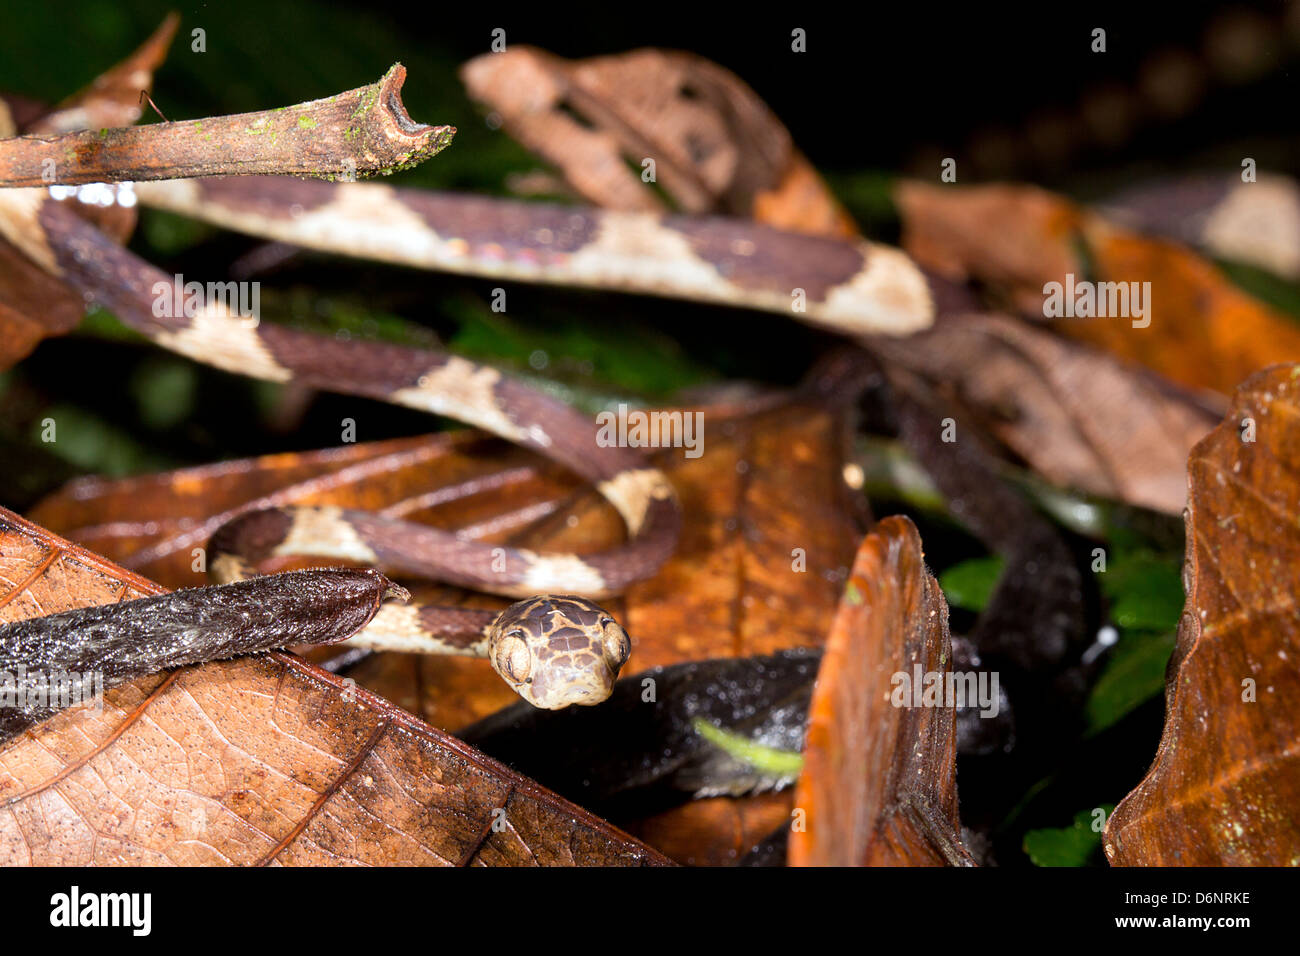 Puntas romas tree snake (Imantodes cenchoa) arrastrándose a través de la vegetación del sotobosque, Ecuador Foto de stock